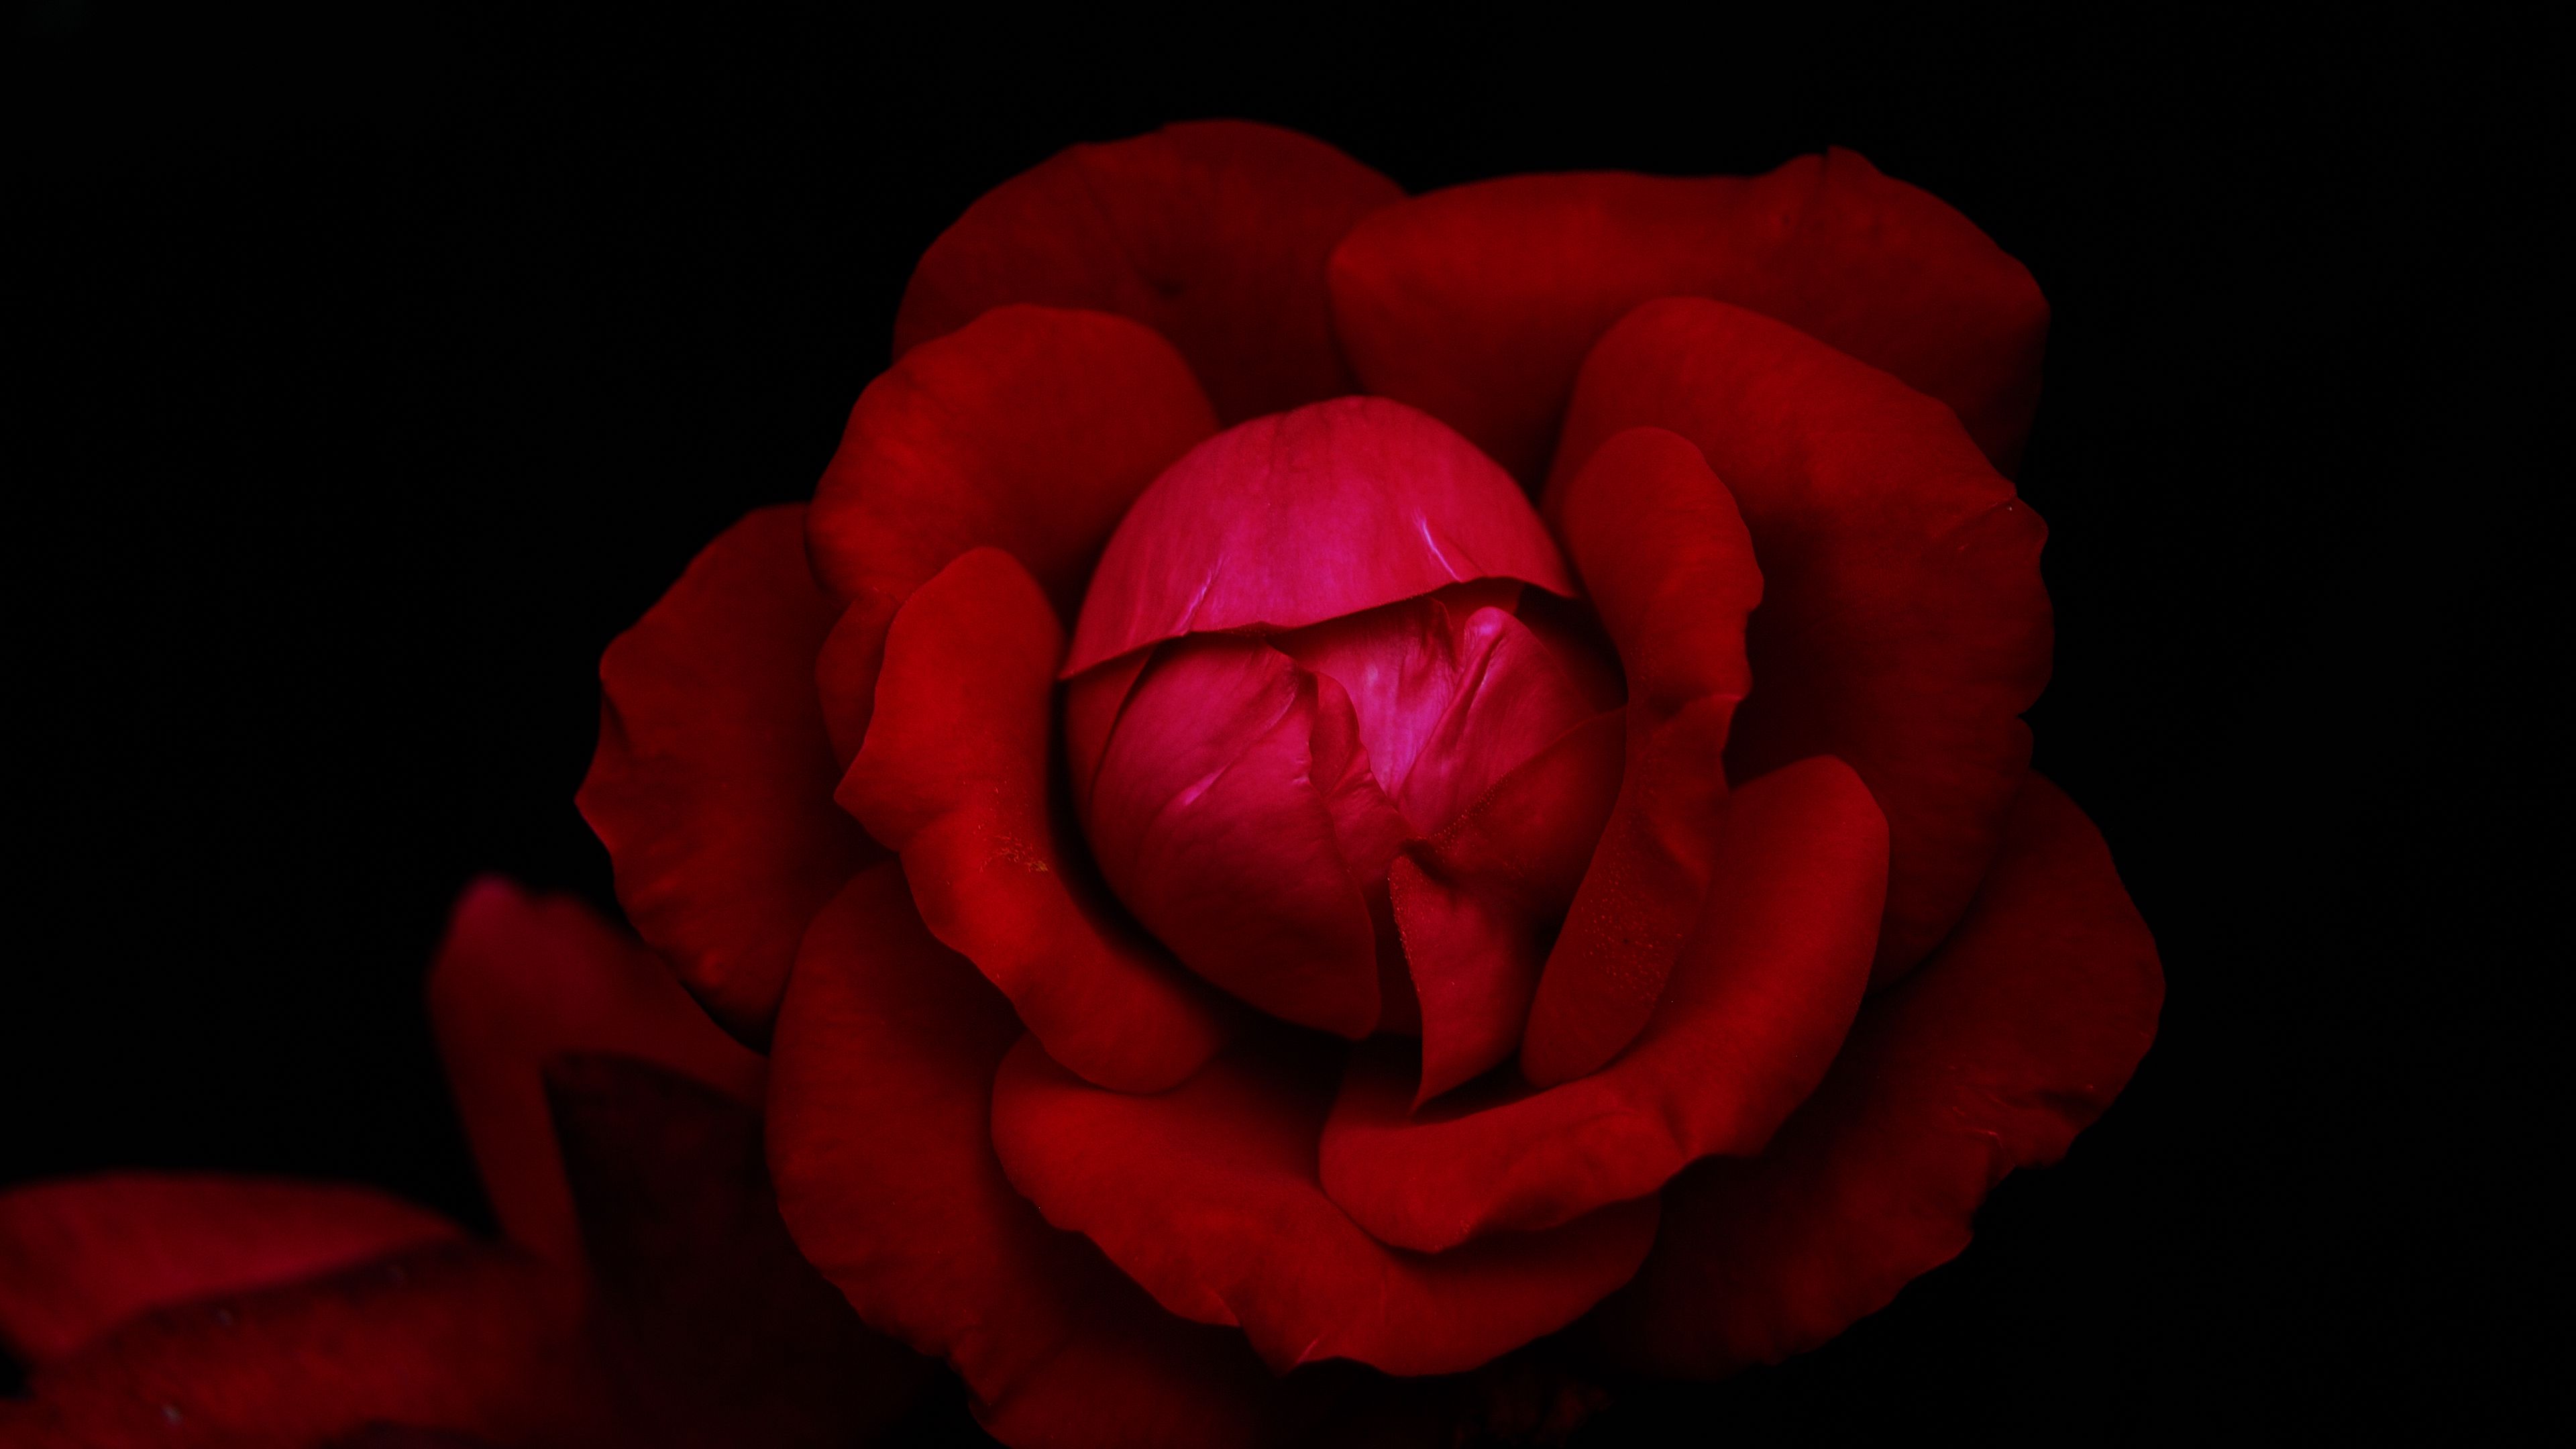 Hoa hồng đỏ luôn là biểu tượng của tình yêu và uy nghiêm. Hãy để chiếc ảnh nền này đem đến cho bạn cảm giác ấm áp trong trái tim và những kỷ niệm đáng nhớ với người thân yêu.